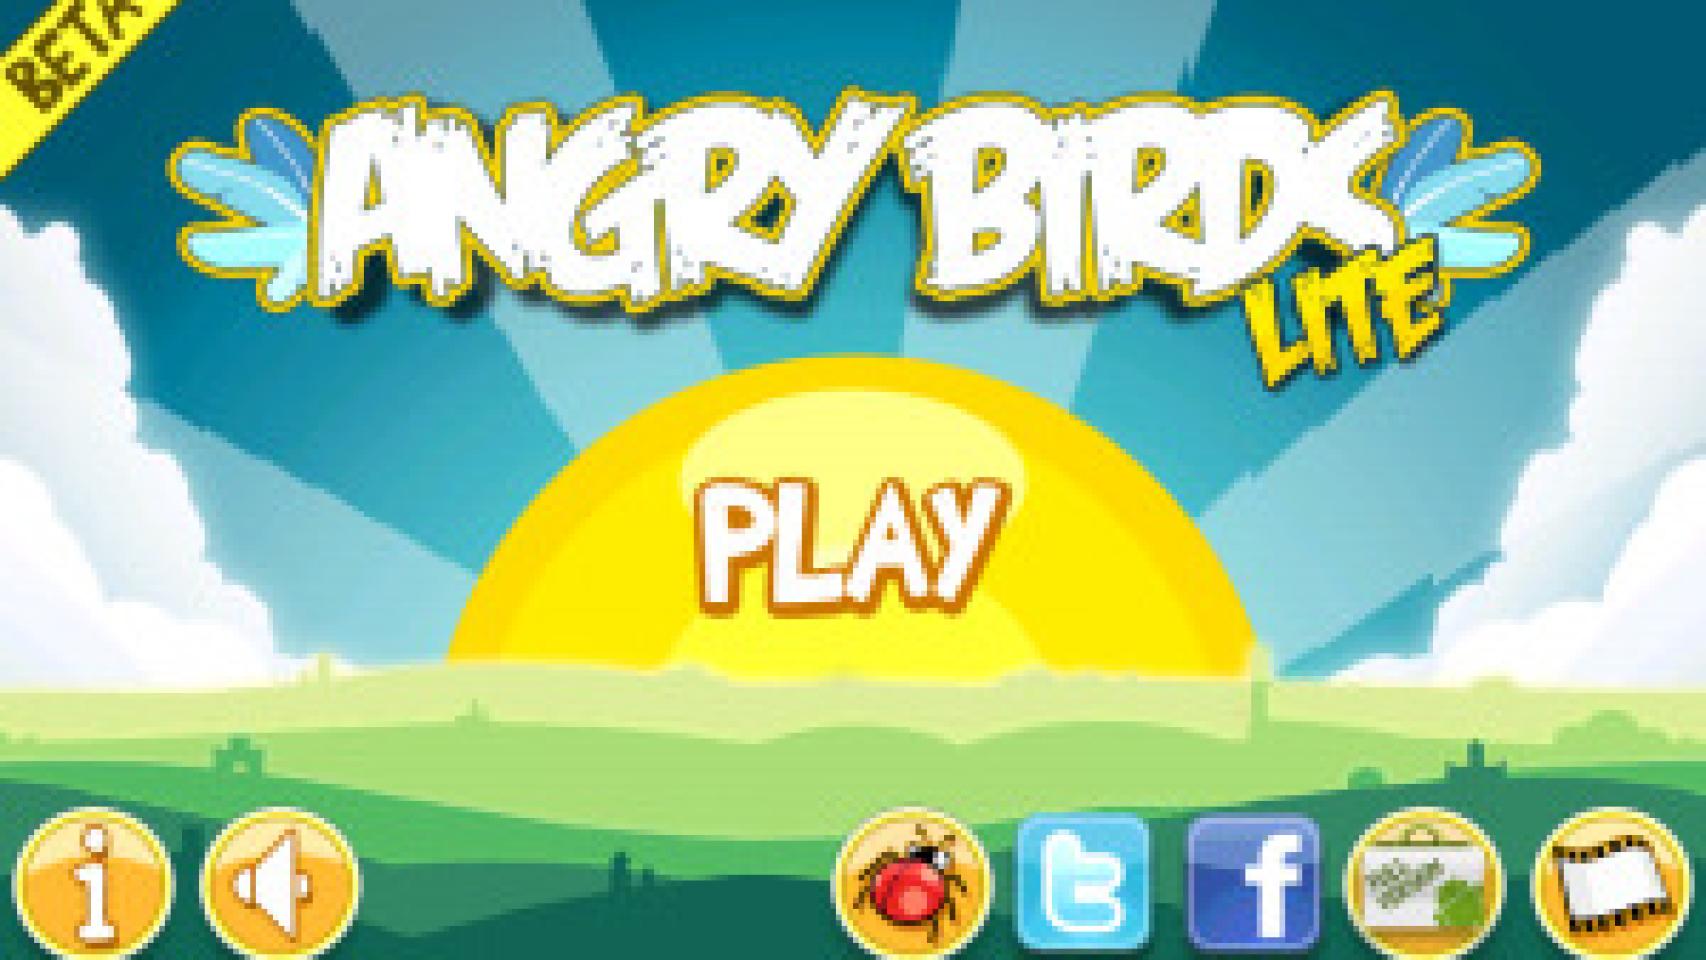 Estreno mundial de Angry Birds, el juego de los pájaros cabreados kamikazes